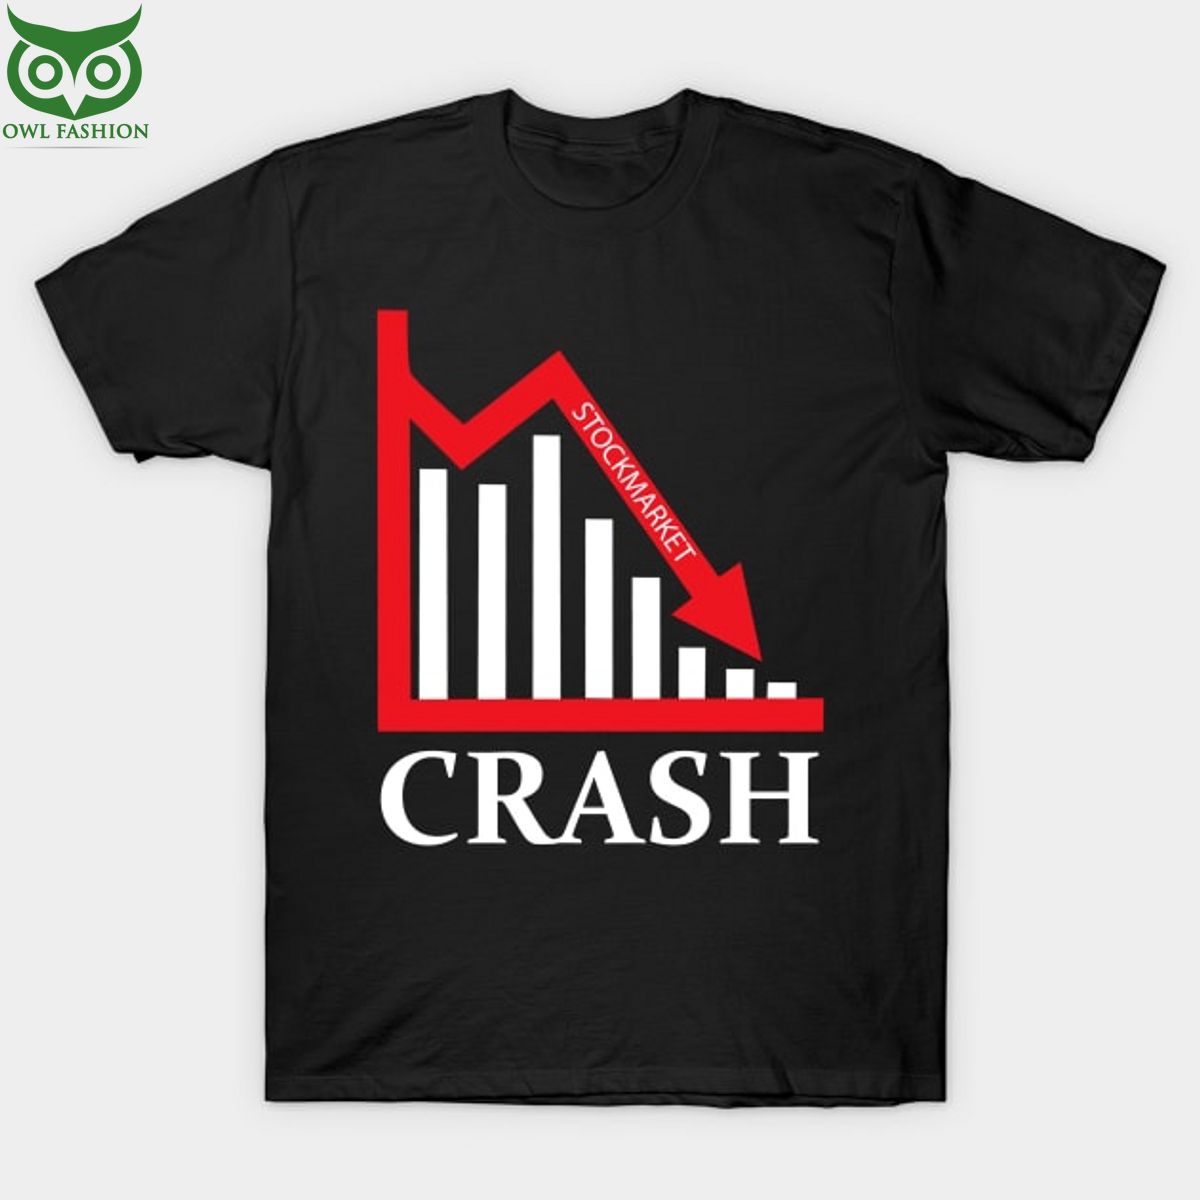 stock market crash t shirt big short shop owl fashion 1 6ATW6.jpg